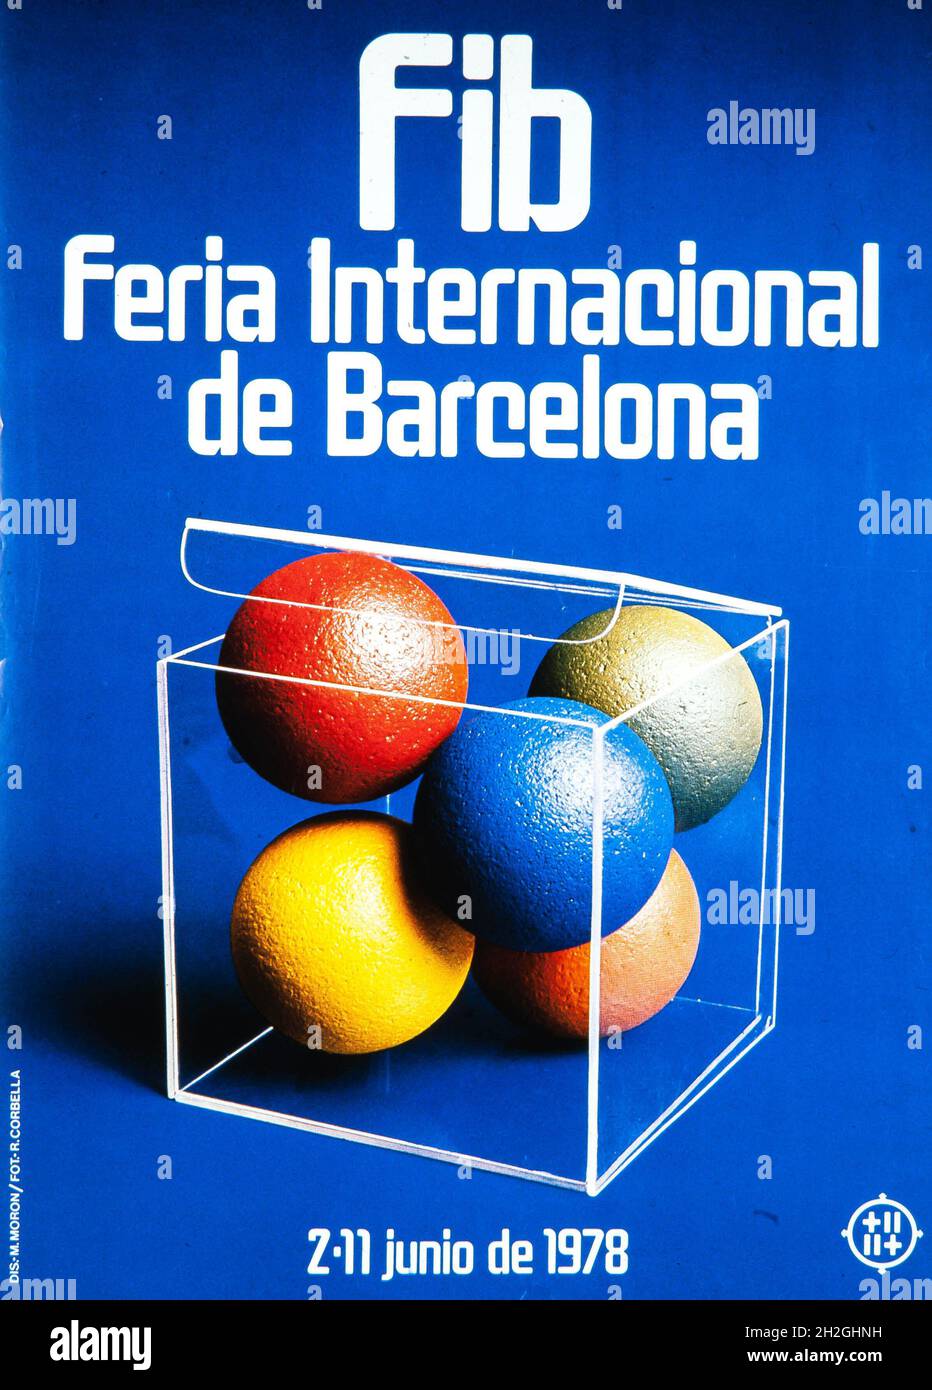 Cartel de M. Moron, 'FIB, Feria Internacional de Barcelona, 2-11 junio de 1978'. Colección privada. Stock Photo